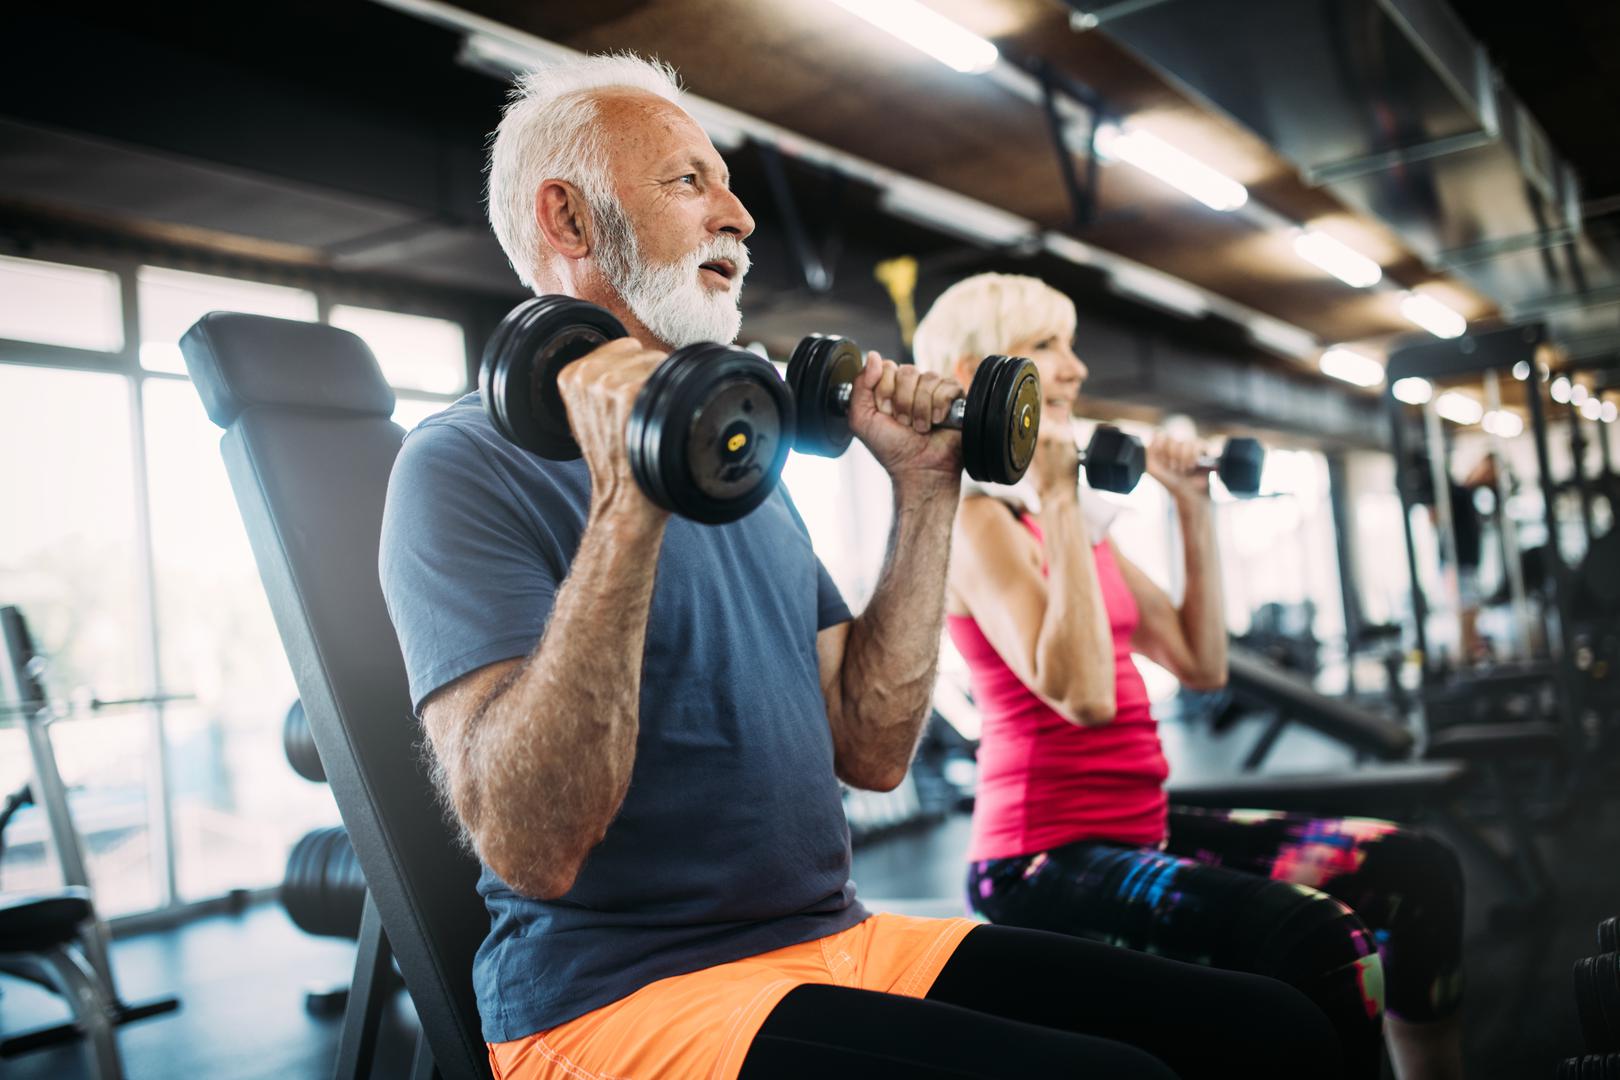 Dob: Možda ne mora nužno biti iznenađujuće, ili pravedno, ali kako starimo, postaje sve teže smršaviti. "Što ste stariji, to manje mišićne mase imate na tijelu", kaže Karla Robinson, dr. med., medicinska urednica na GoodRx-u. "Manja mišićna masa može uzrokovati usporavanje metabolizma i zadržavanje masti." Jedan od načina za borbu protiv toga je uključivanje više treninga snage za "izgradnju i zadržavanje mišića", predlaže Robinson.